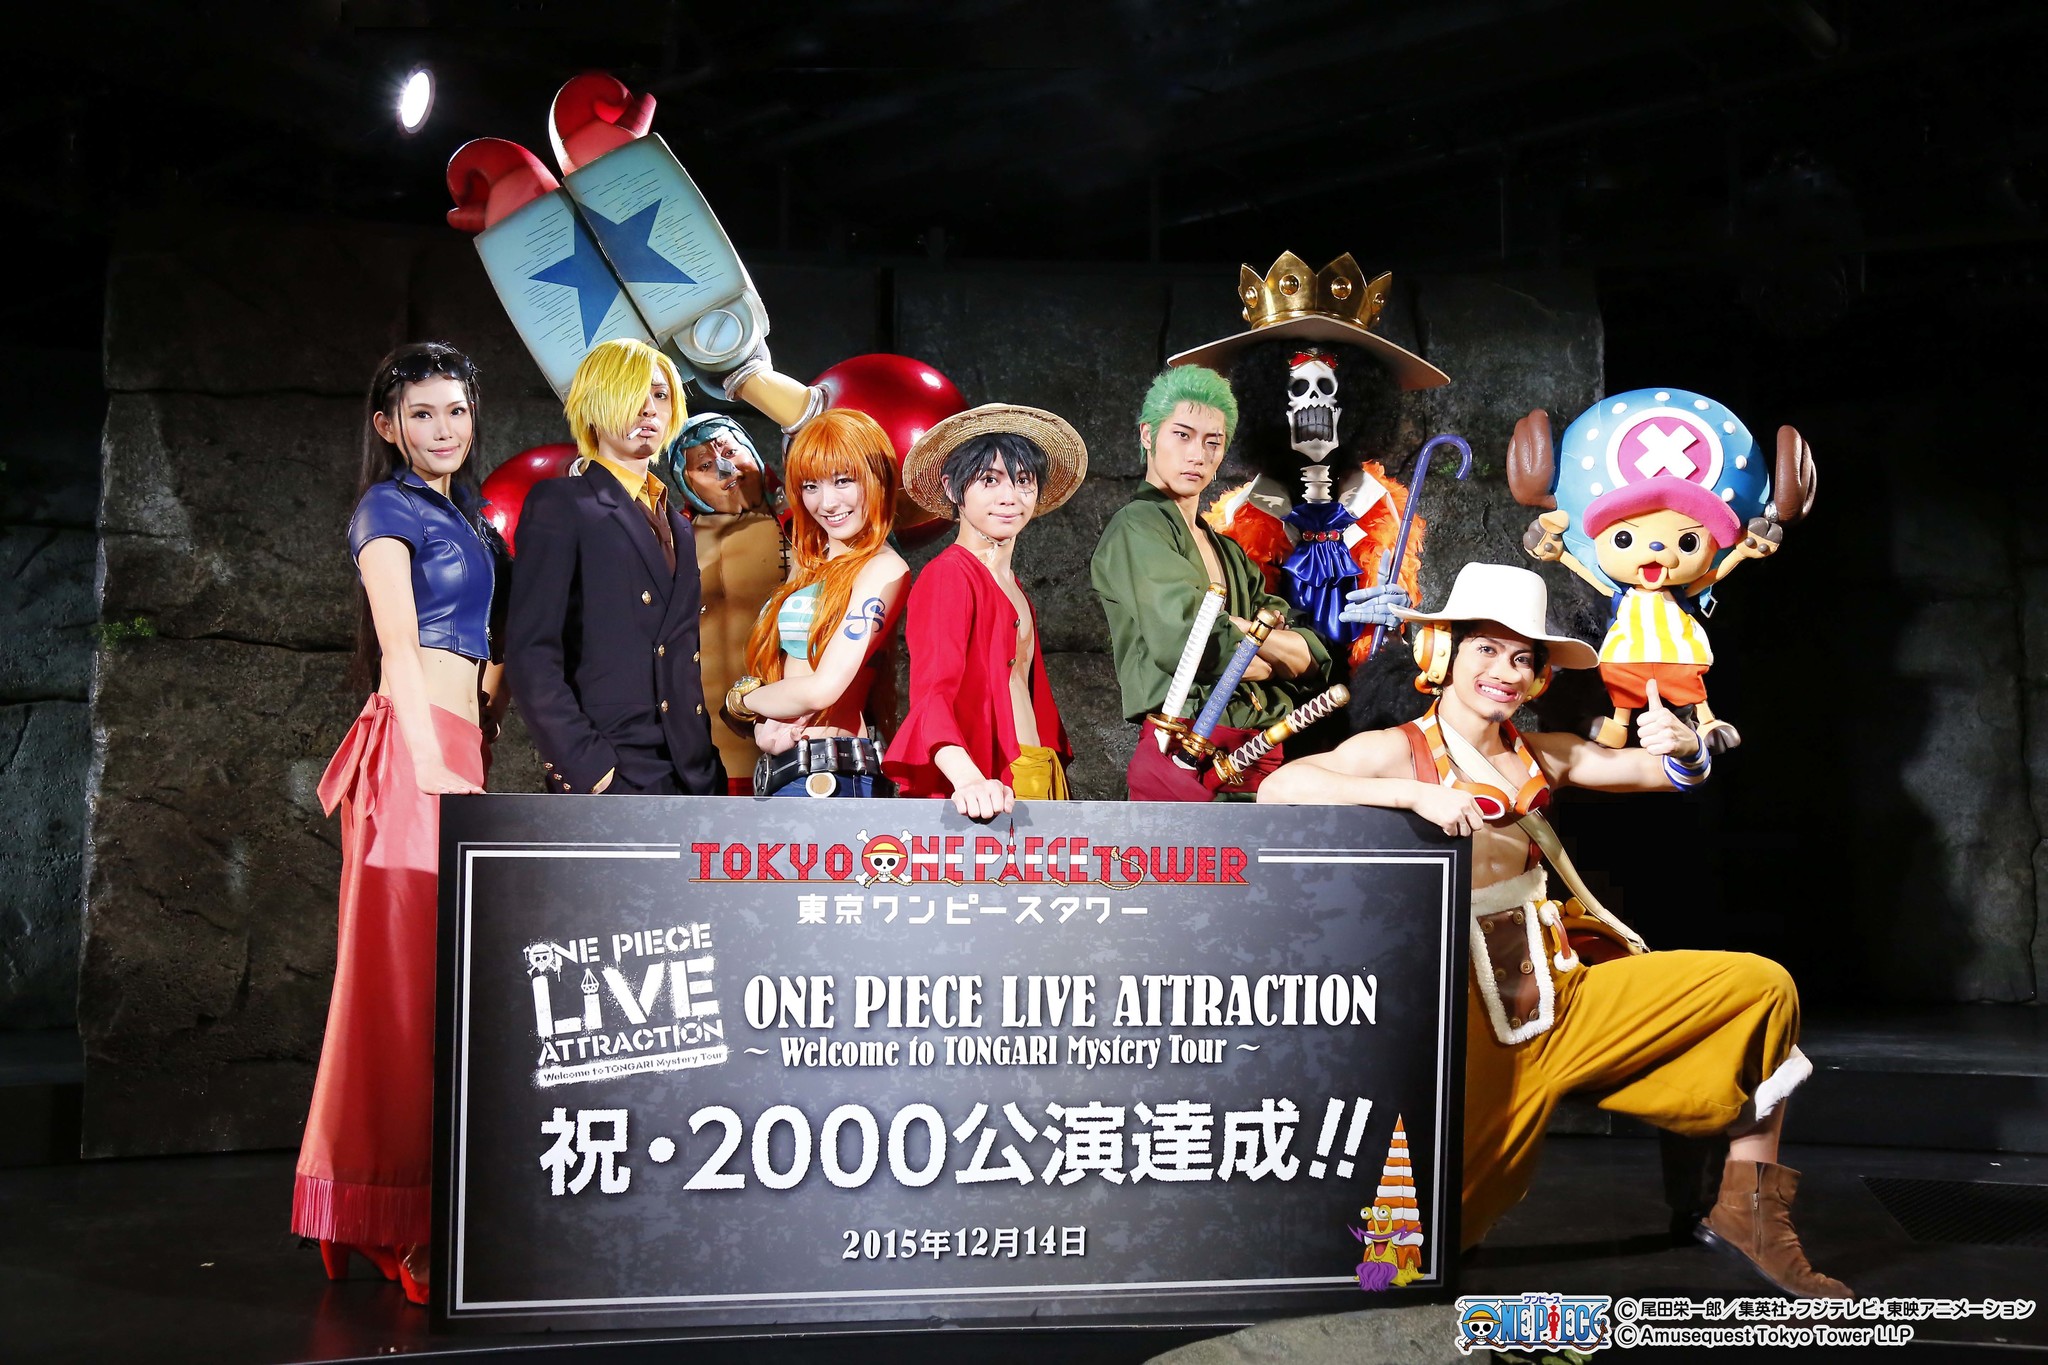 東京ワンピースタワー で大人気のライブショー One Piece Live Attraction 開業9ヶ月で早くも00公演を突破 東京 ワンピースタワーのプレスリリース